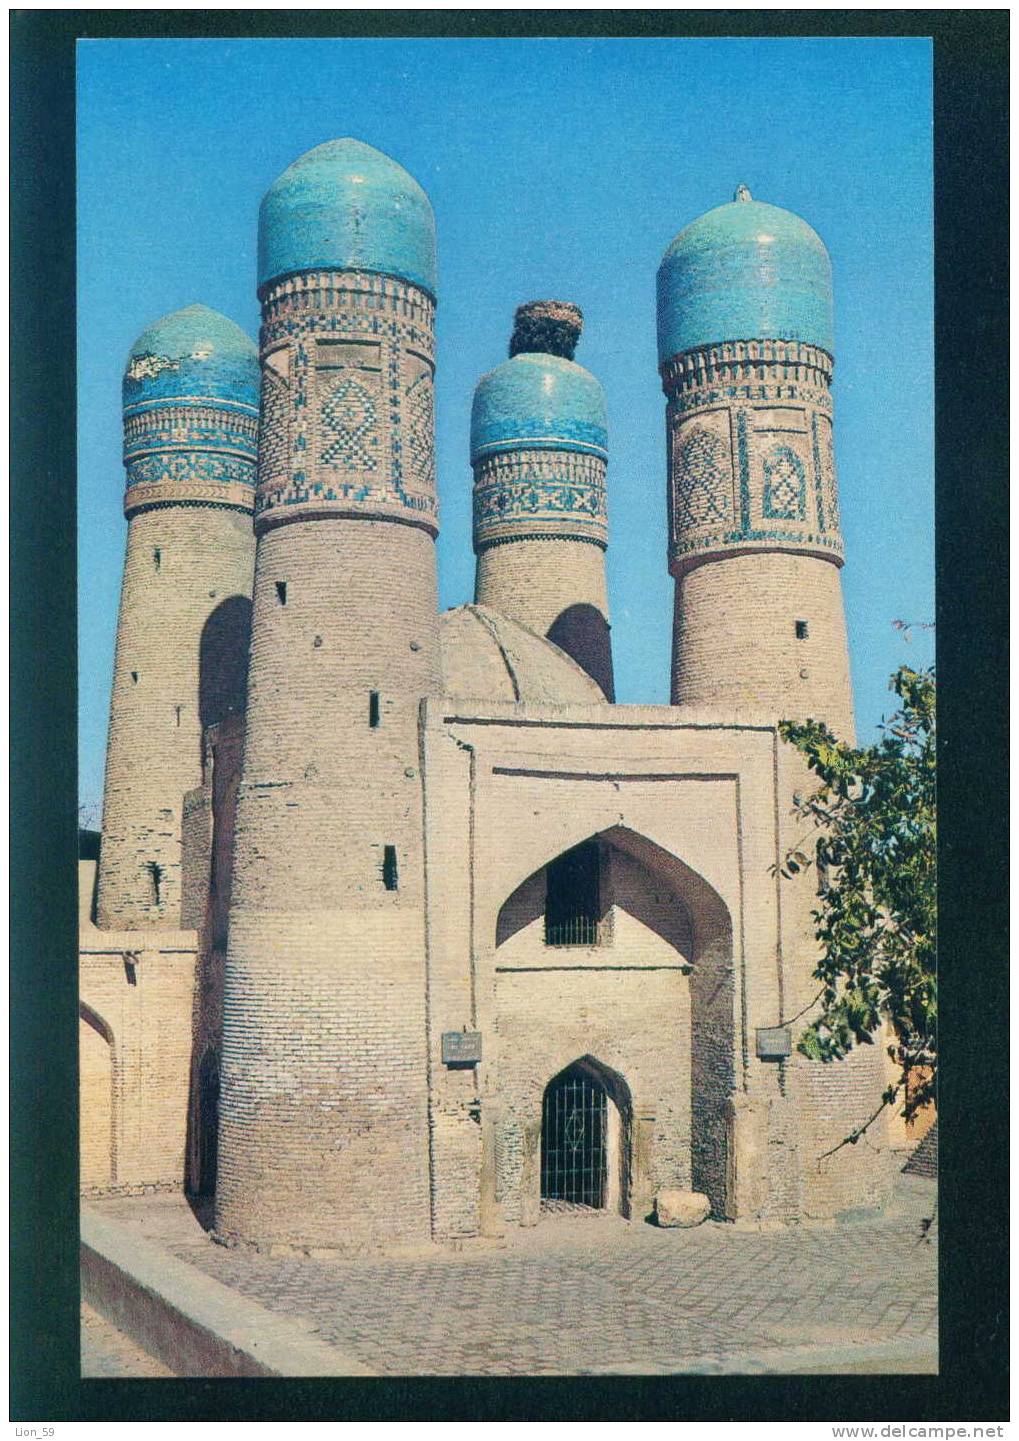 Uzbekistan - BUKHARA - CHAR - MINAR ENTRANCE TO A MADRASSAH 1807 / 086051 - Usbekistan